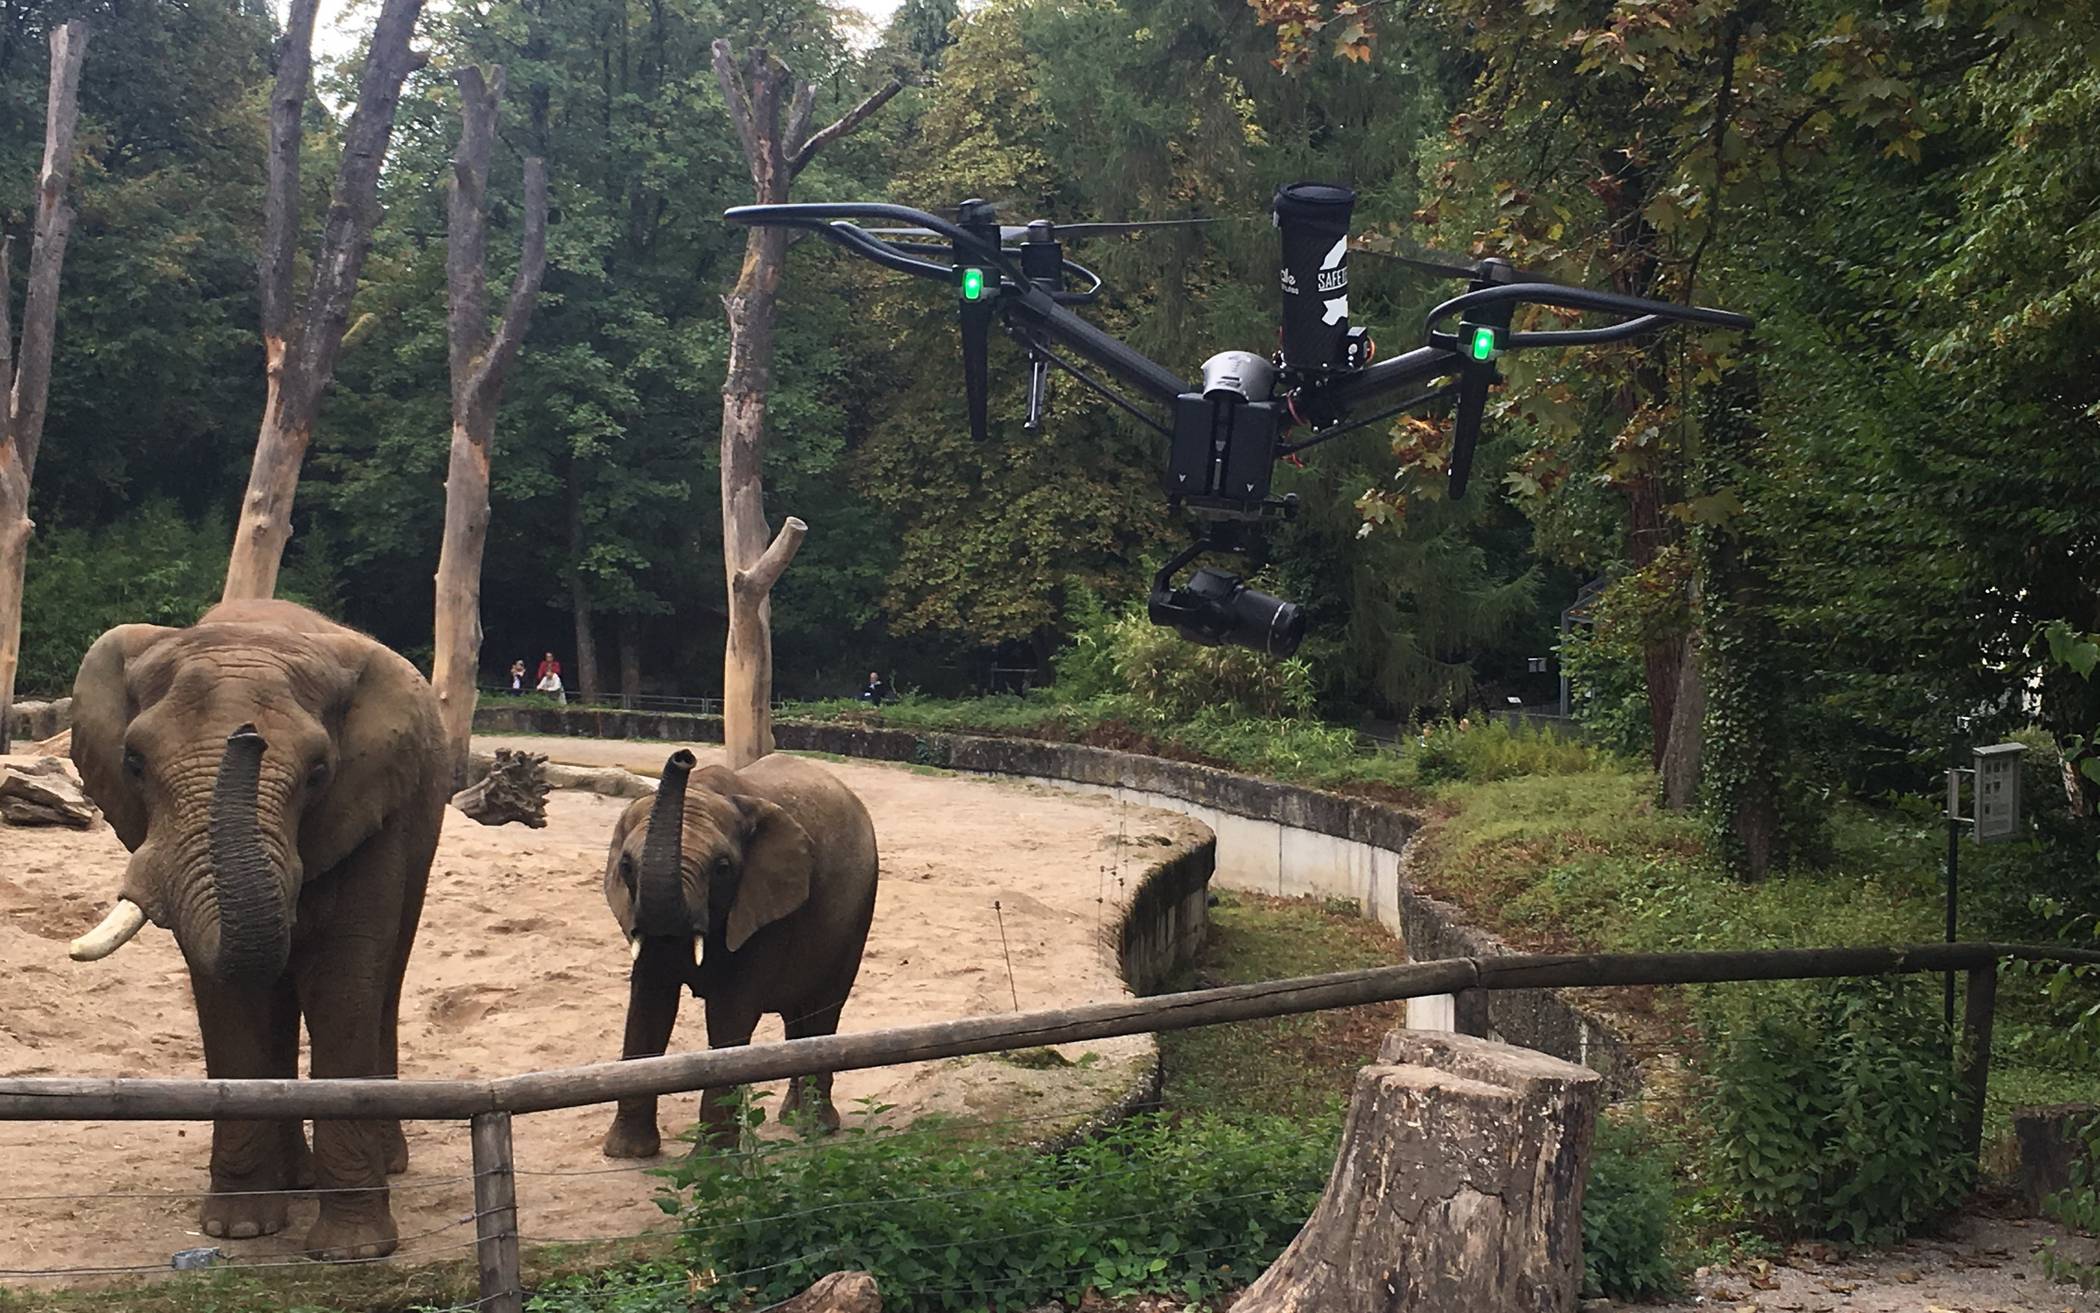  Die Elefanten und die Drohne.  